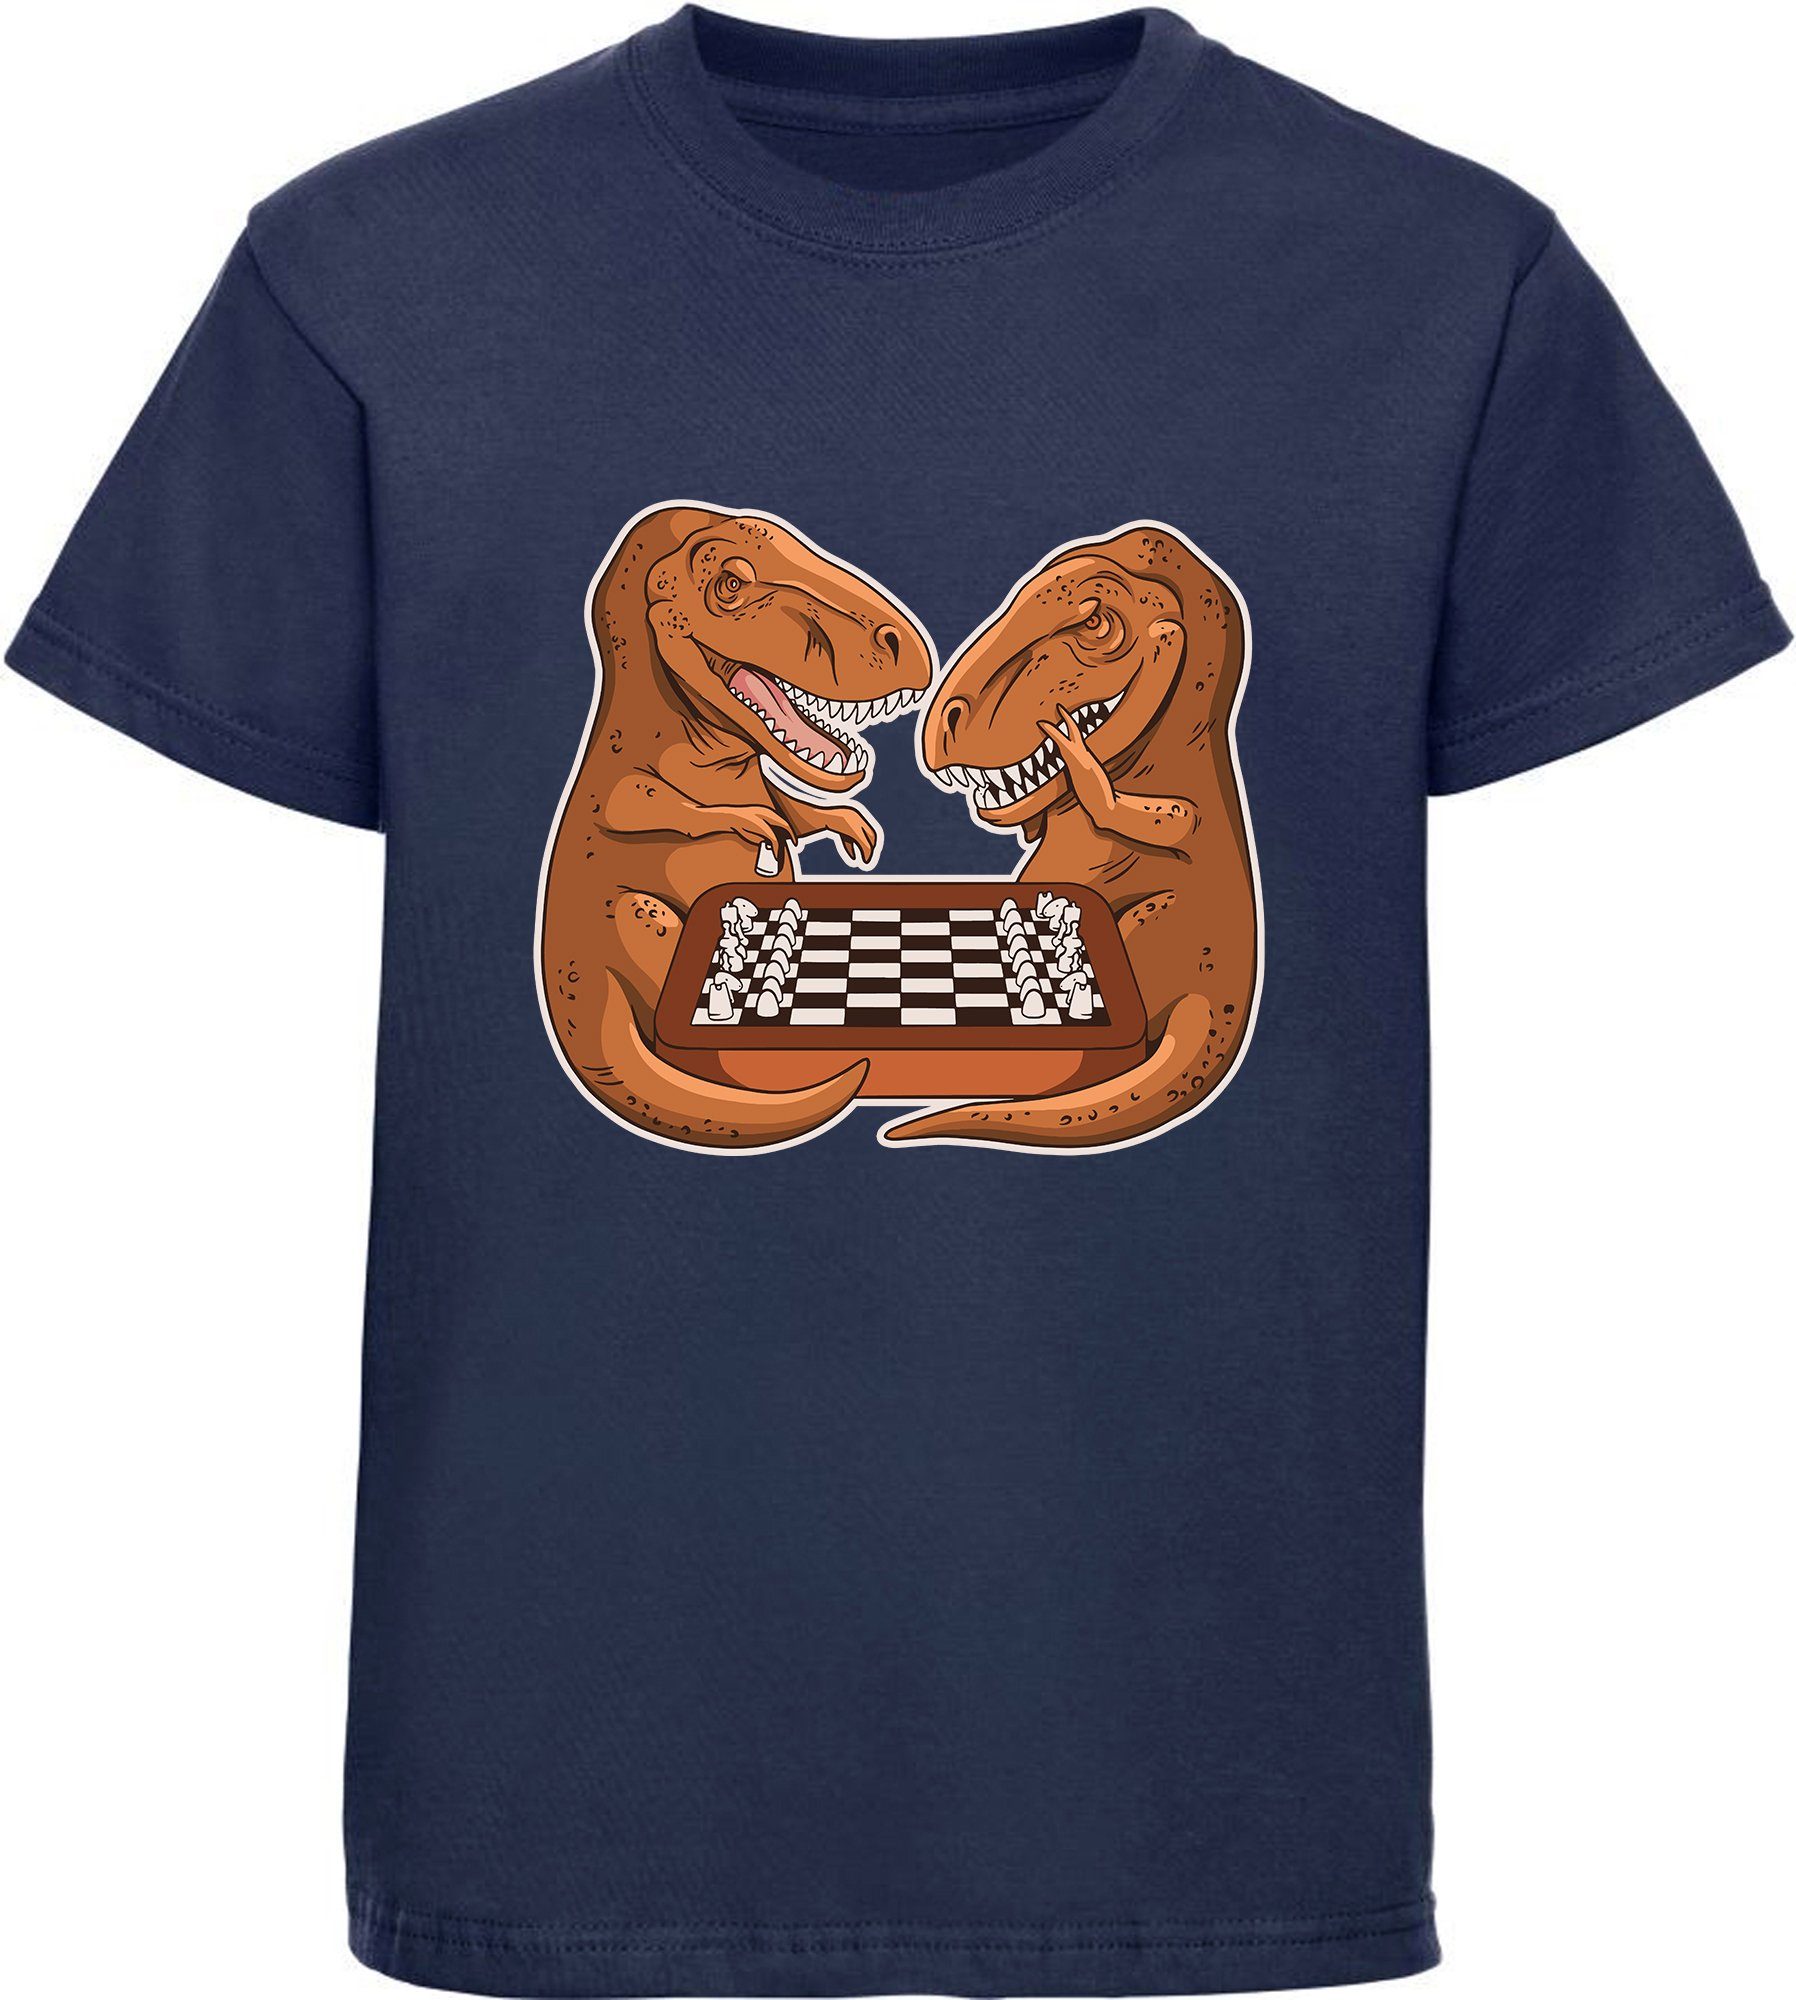 MyDesign24 Print-Shirt bedrucktes Kinder T-Shirt mit T-Rex beim Schach Baumwollshirt mit Dino, schwarz, weiß, rot, blau, i67 navy blau